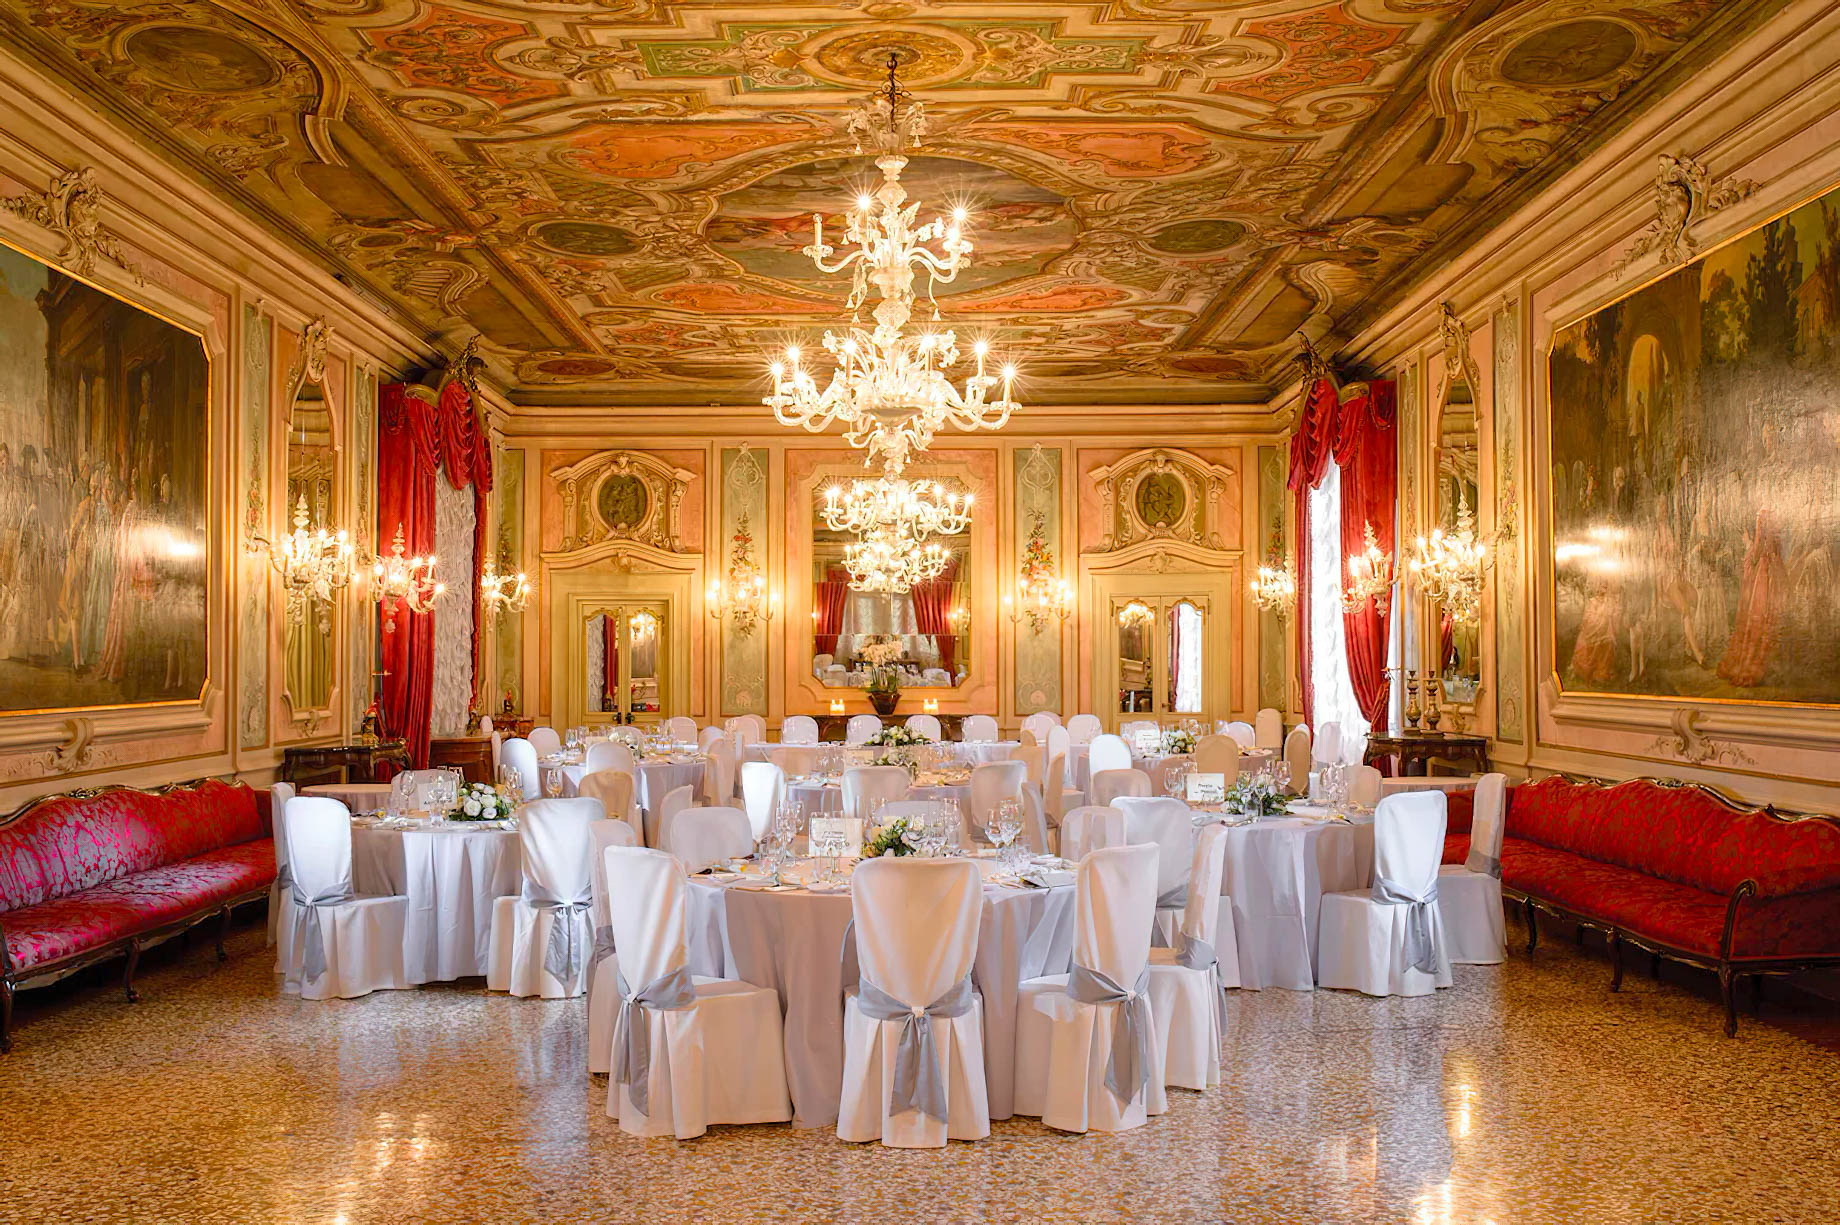 Baglioni Hotel Luna, Venezia – Venice, Italy – Ballroom